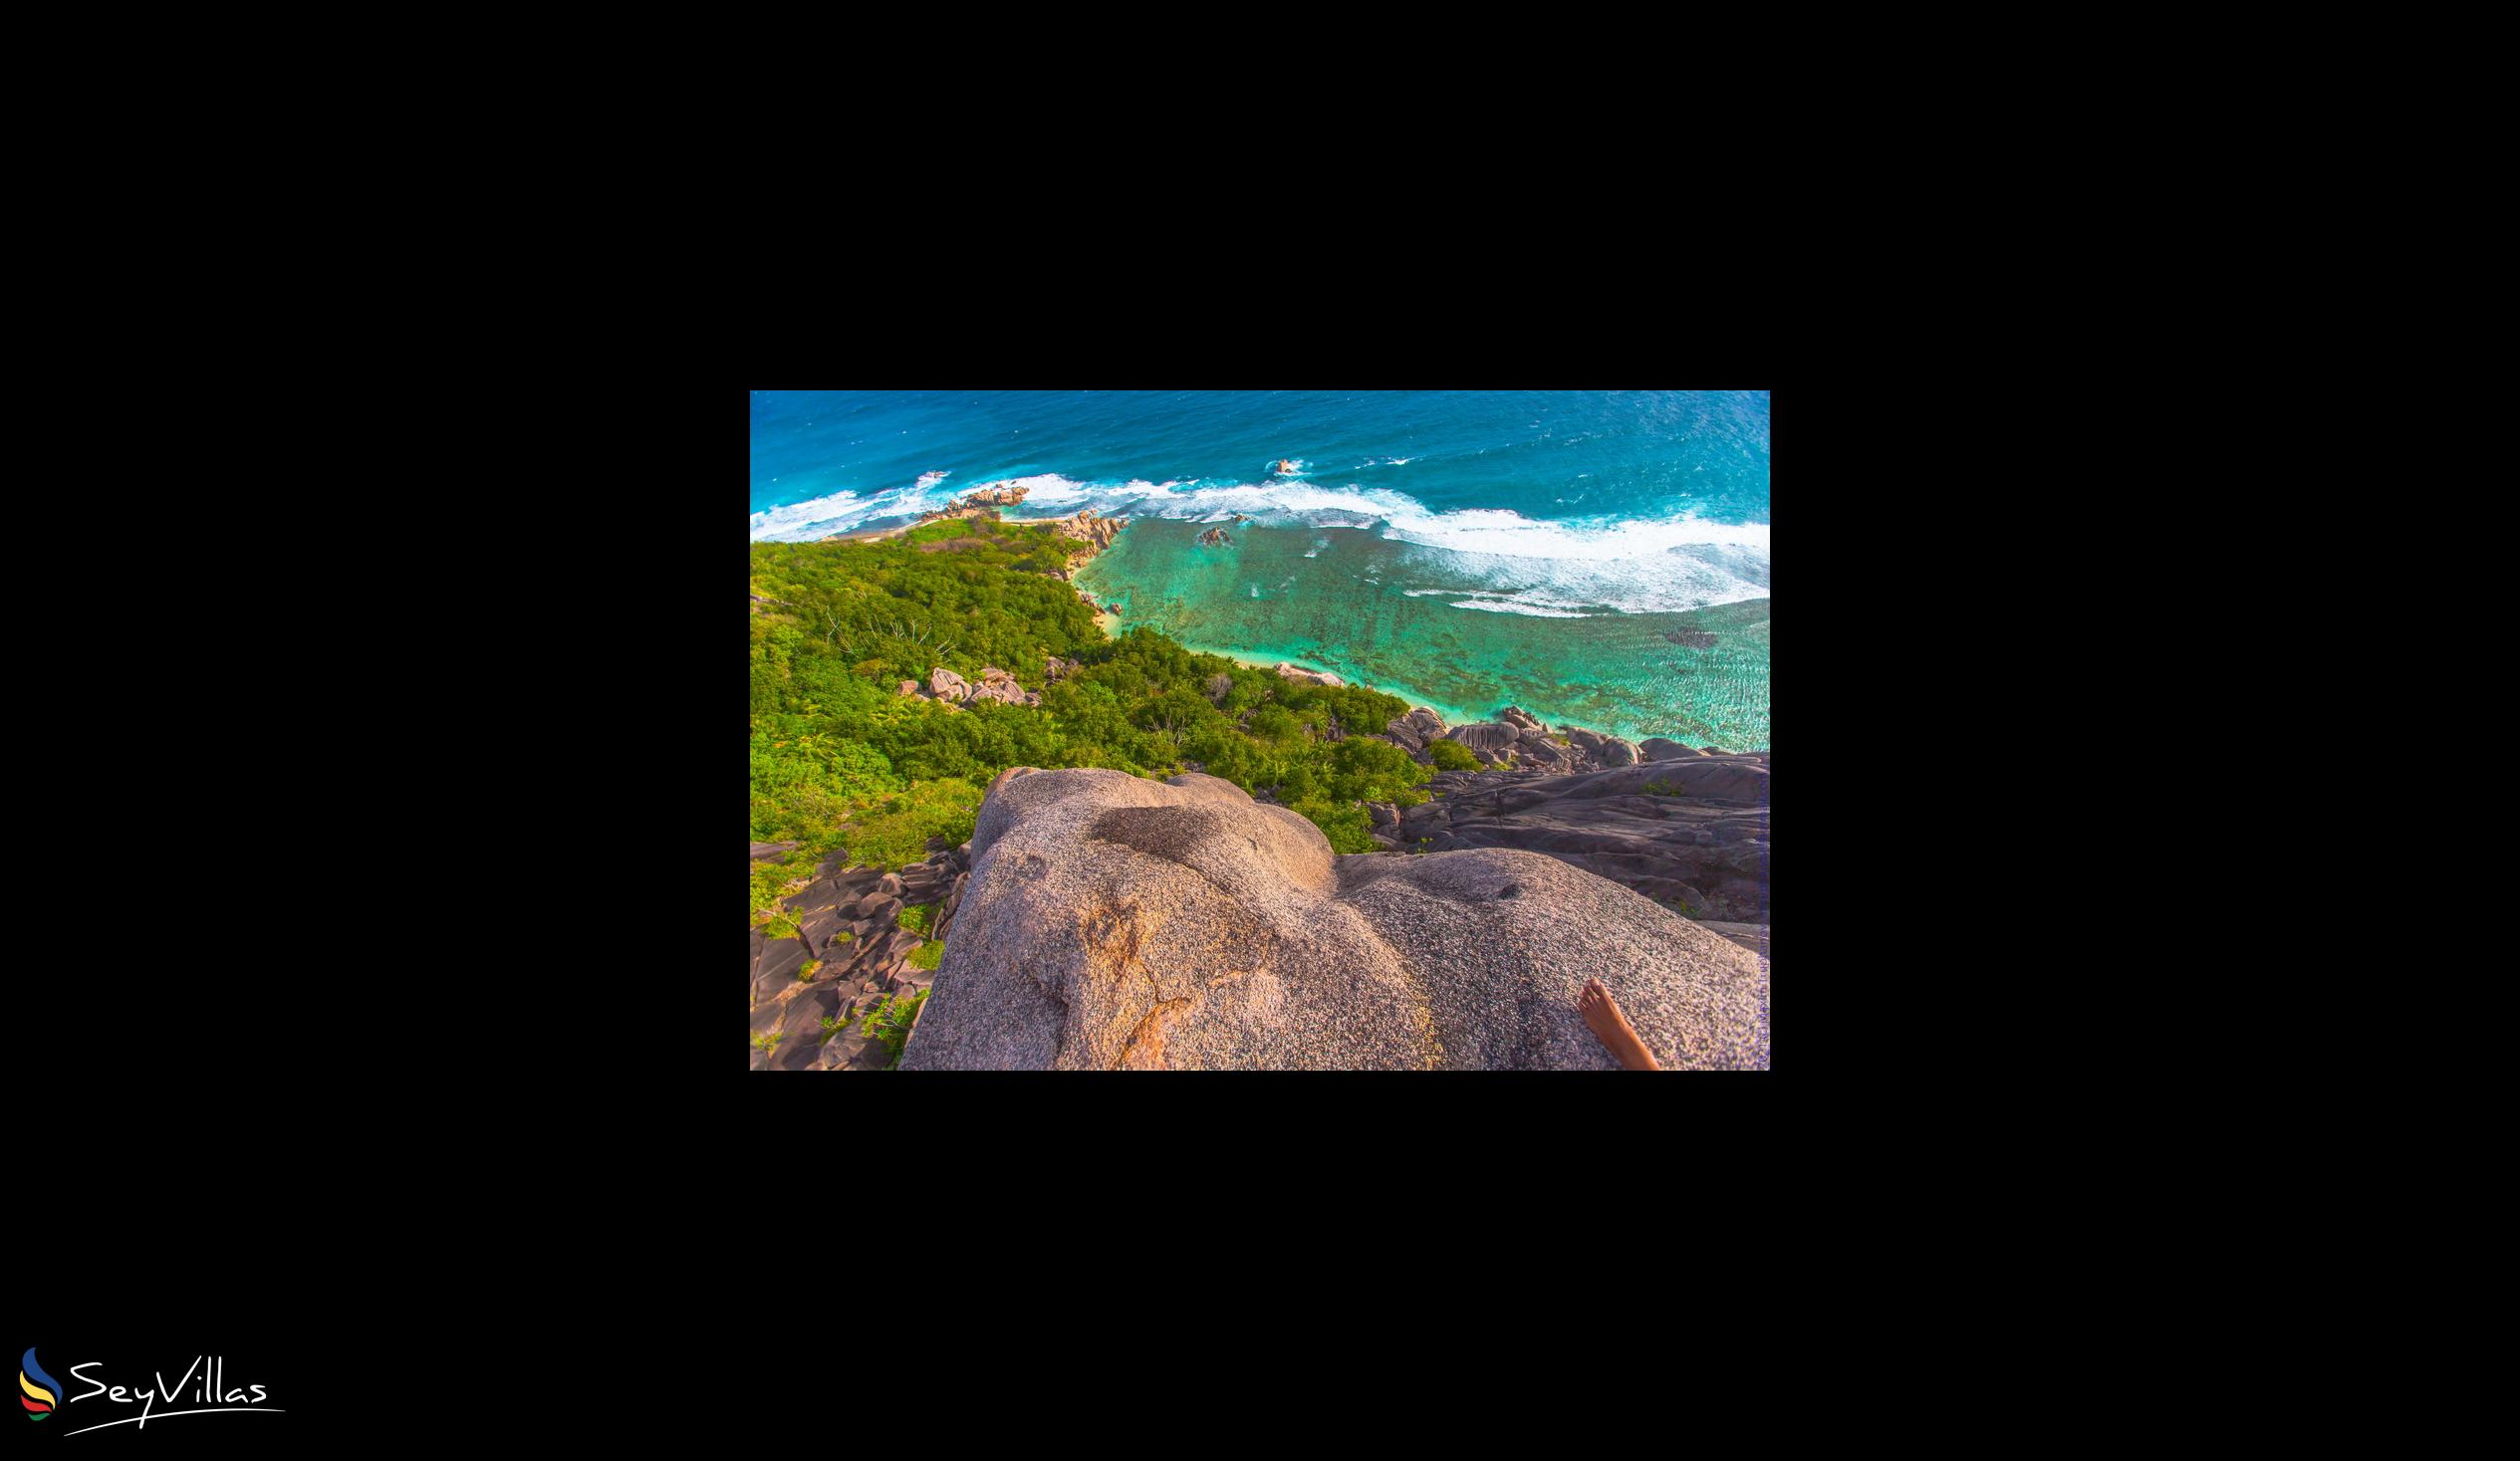 Foto 35: Ambiance Villa - Posizione - La Digue (Seychelles)